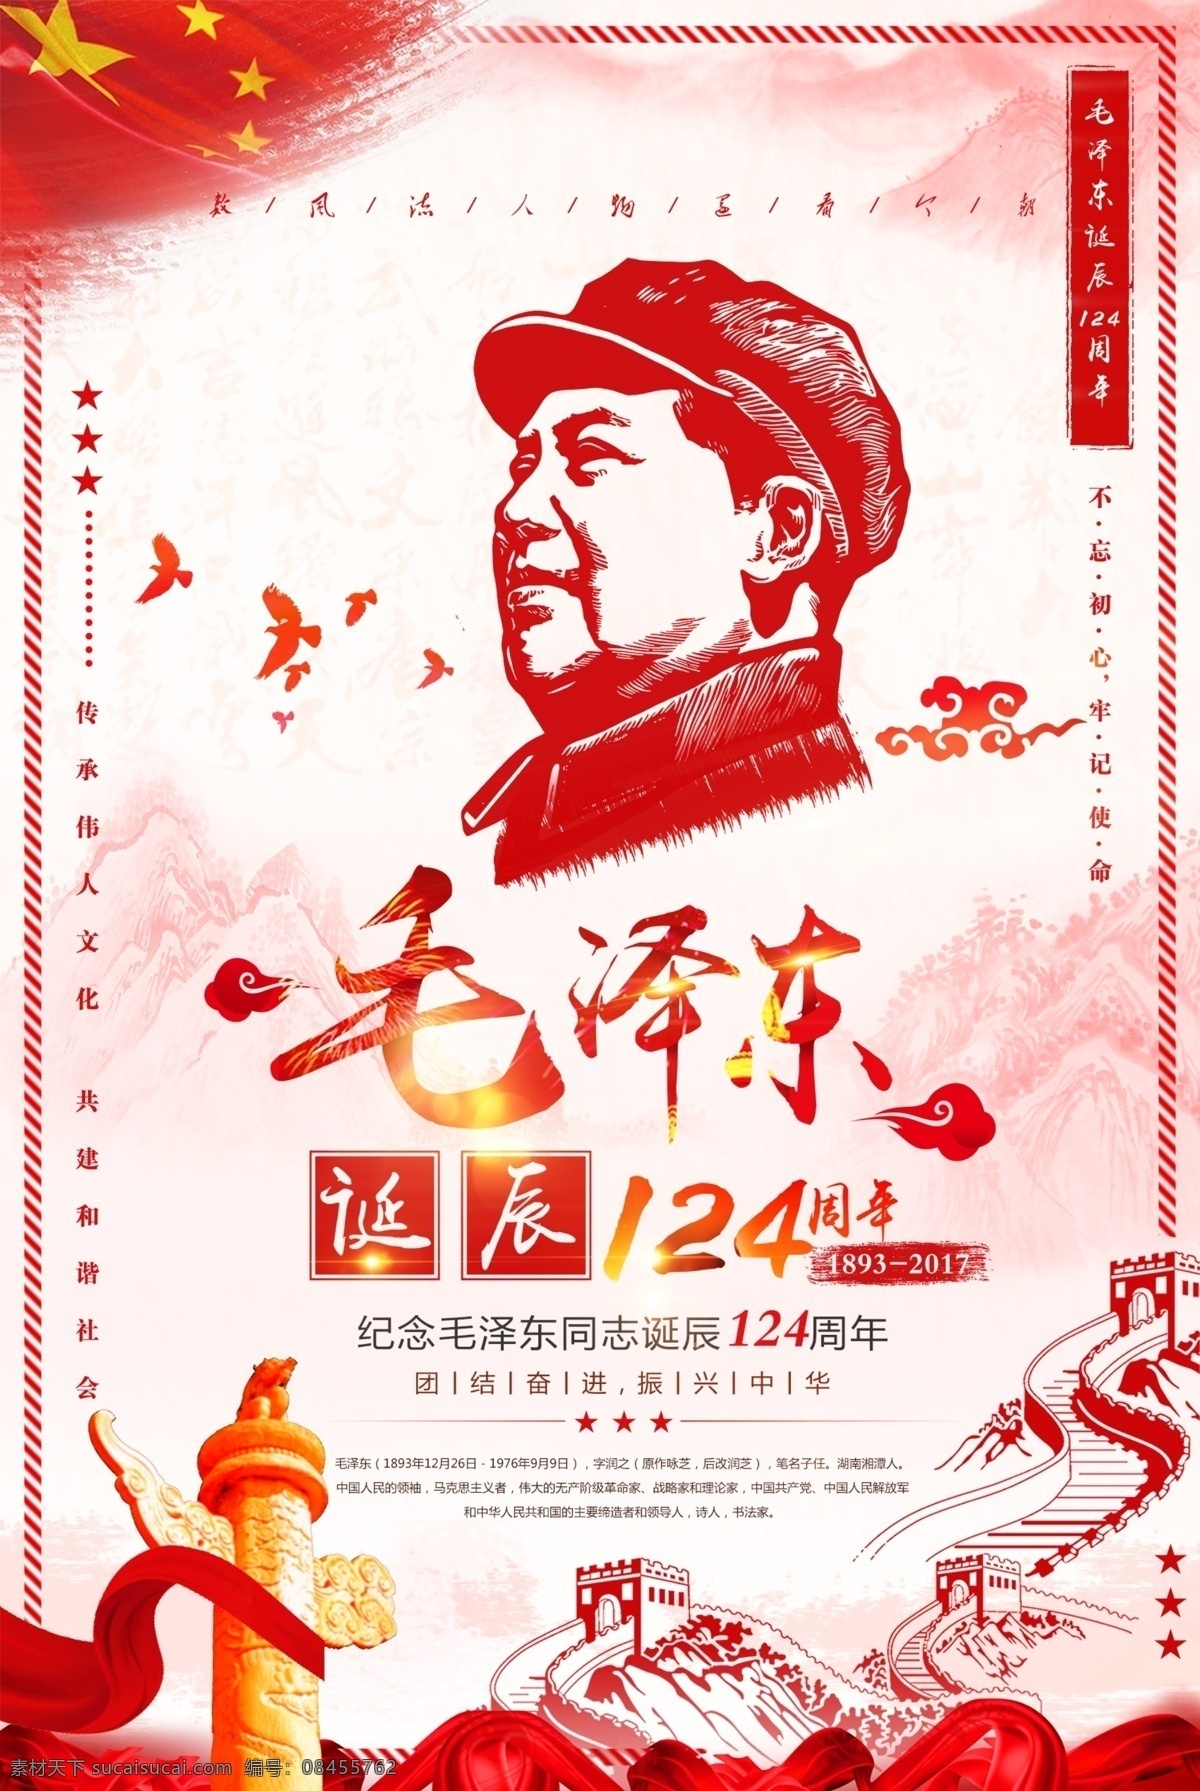 毛泽东 诞辰 纪念日 宣传海报 毛泽东诞辰 中国梦 中国风 党建 毛主席诞辰 爱国主义教育